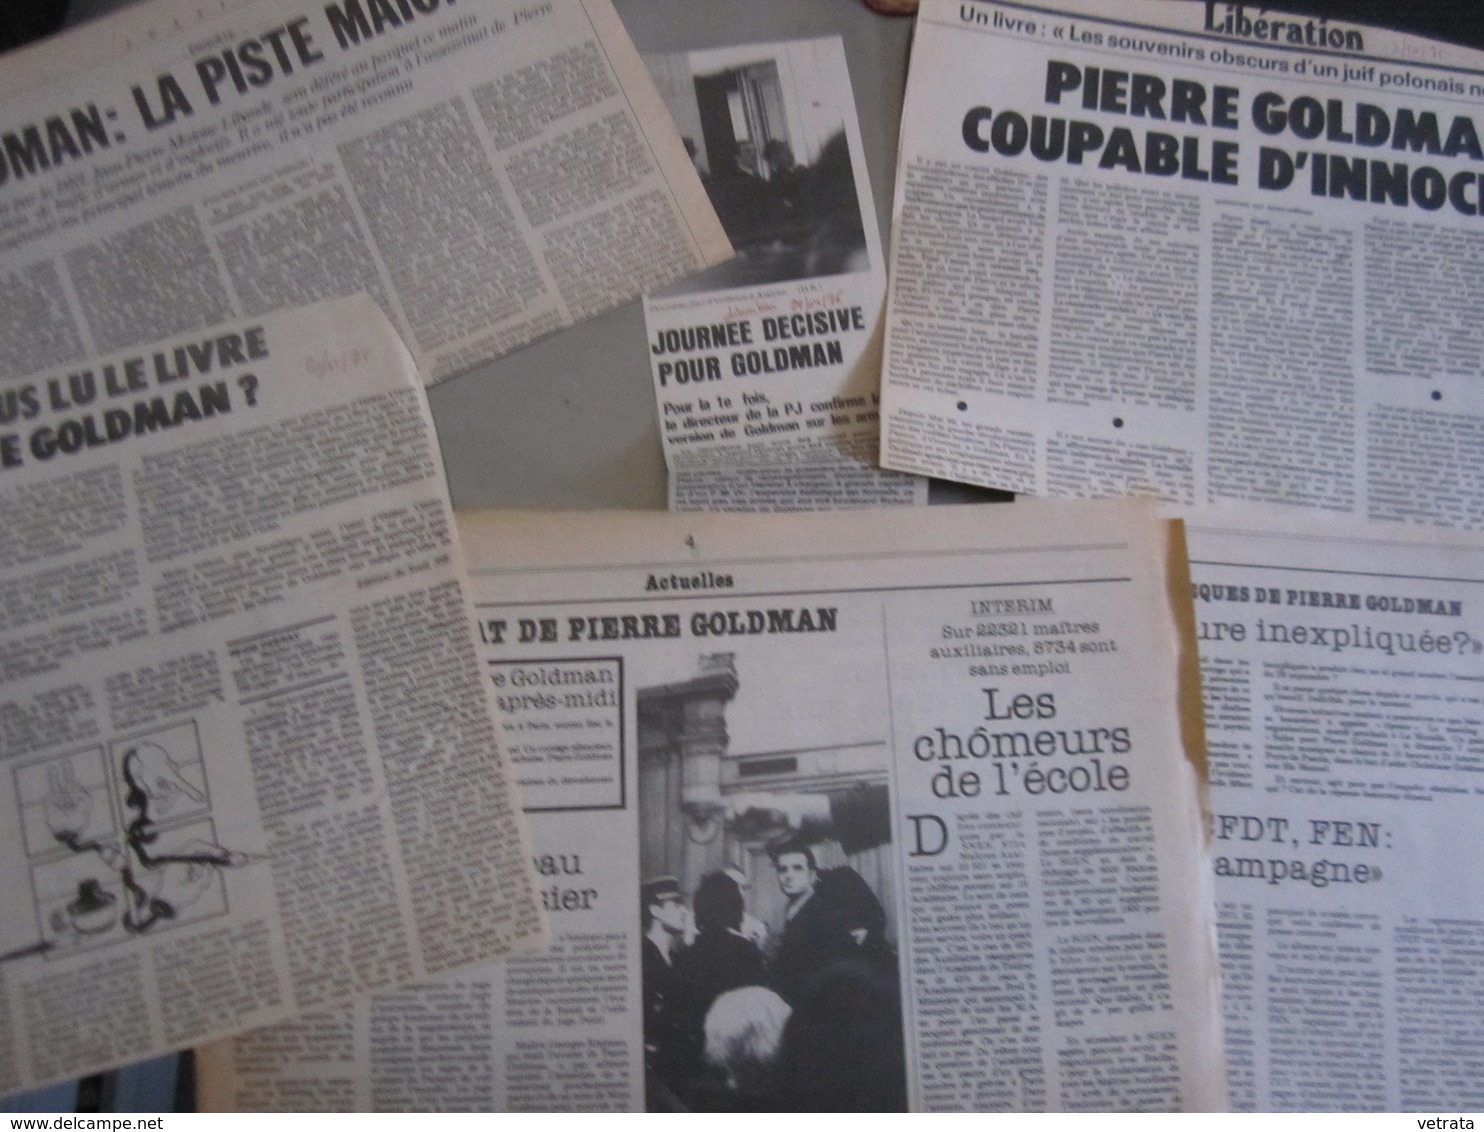 Dossier Composé De 103 Articles (dont 29 Photocopies) Entre 1974 & 2010 Sur Pierre GOLDMAN - 1950 - Heute